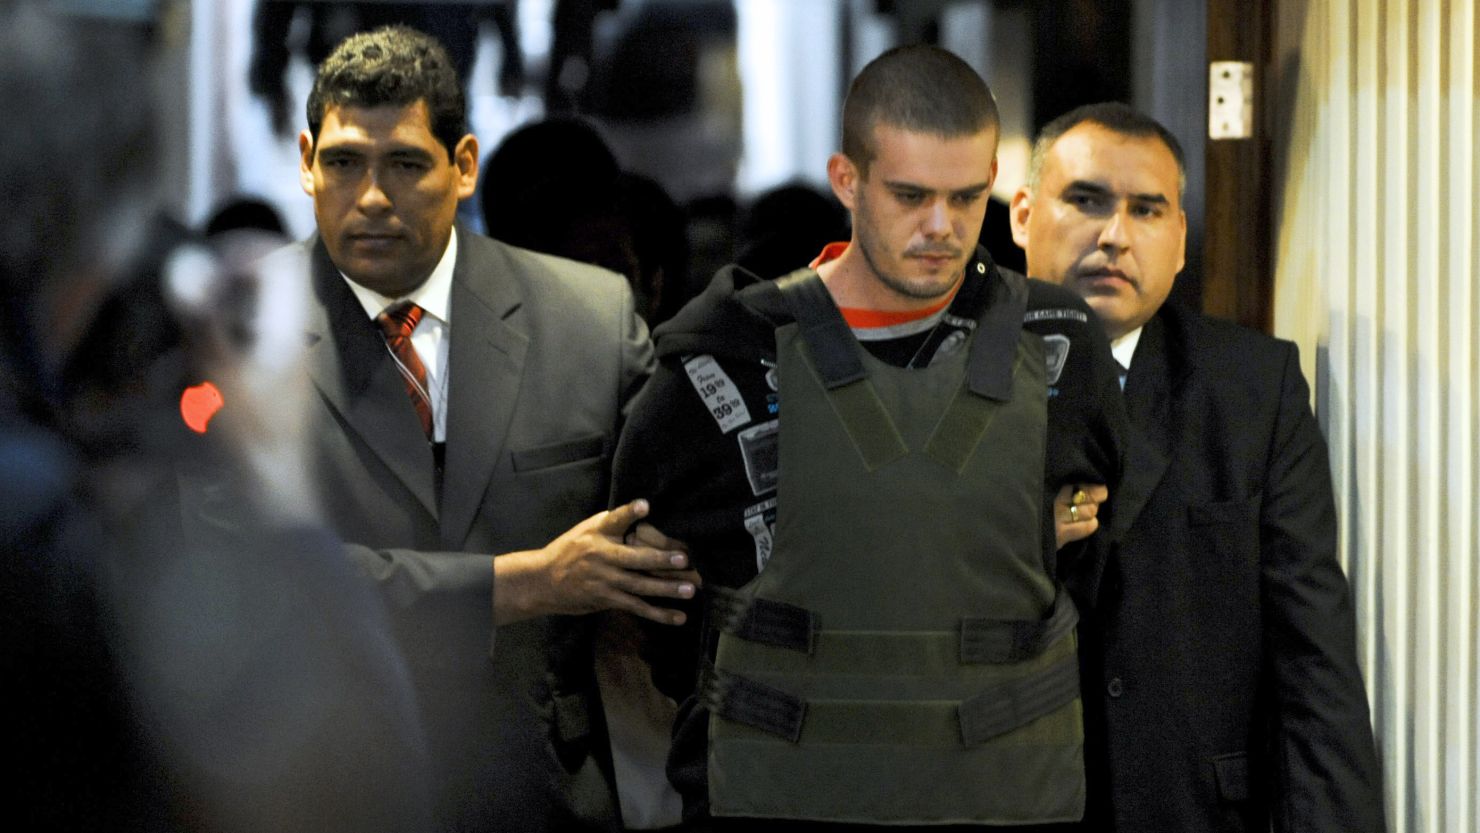 Joran Van der Sloot is accused of killing Stephany Flores in his Lima hotel room last year.